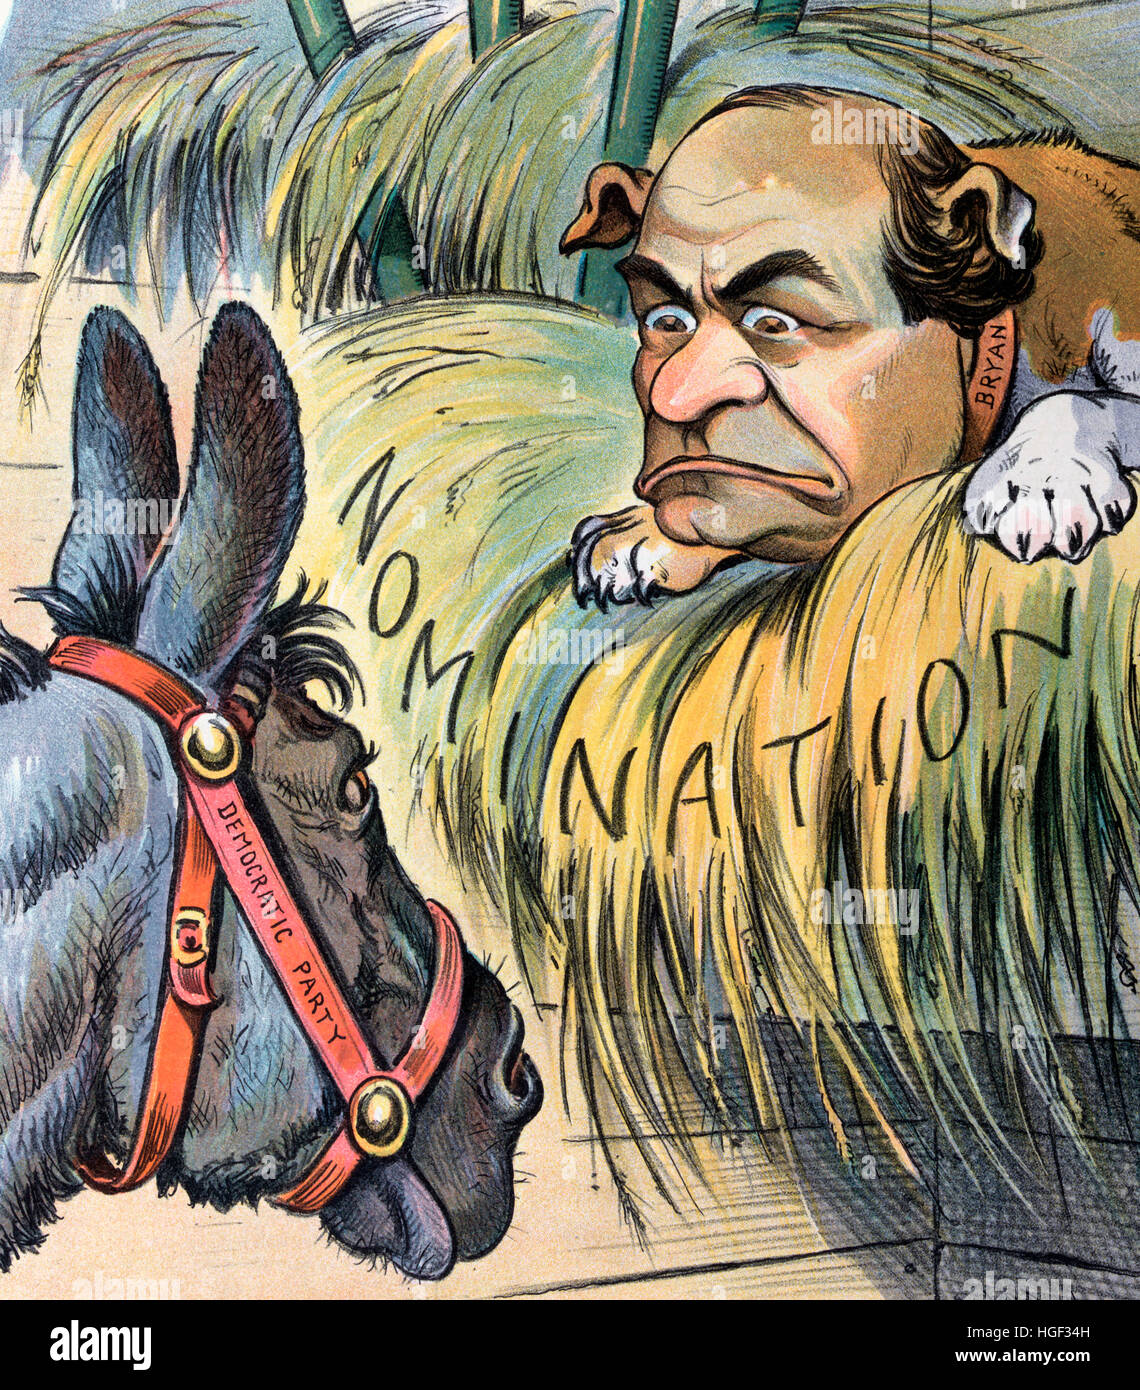 Der Hund In der Krippe politische Karikatur zeigt ein Esel mit der Bezeichnung "Demokratische Partei" starrte auf einen Hund "Bryan" mit dem Gesicht von William Jennings Bryan, liegend auf einem Bett aus Heu beschriftet mit der Bezeichnung "Nomination". Stockfoto